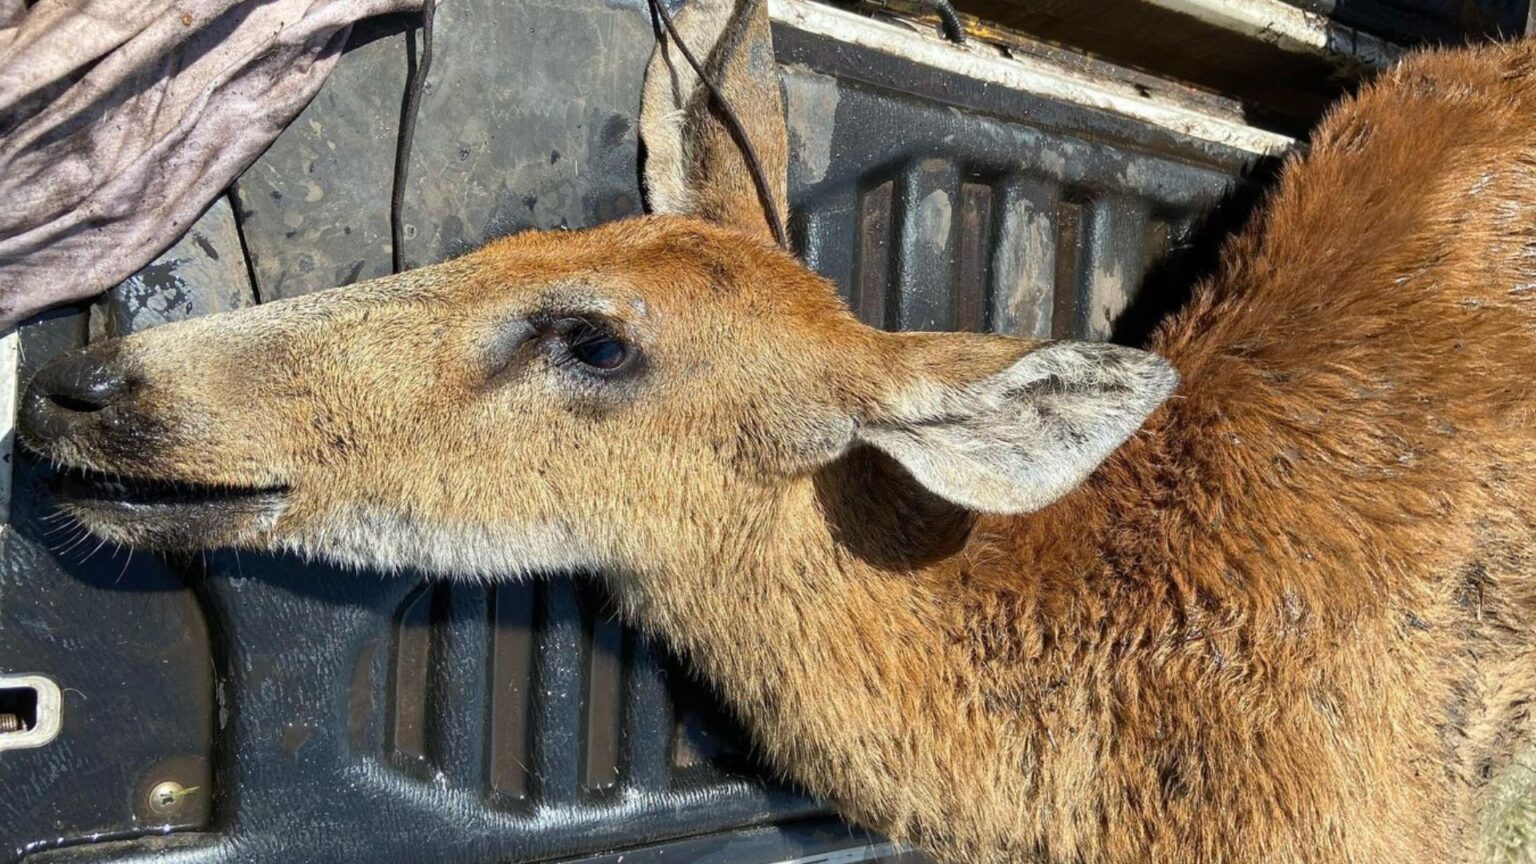 “Por favor dejen de prender fuego”: Las estremecedoras imagenes de un ciervo agonizante que no resistió a los incendios en los Esteros del Iberá